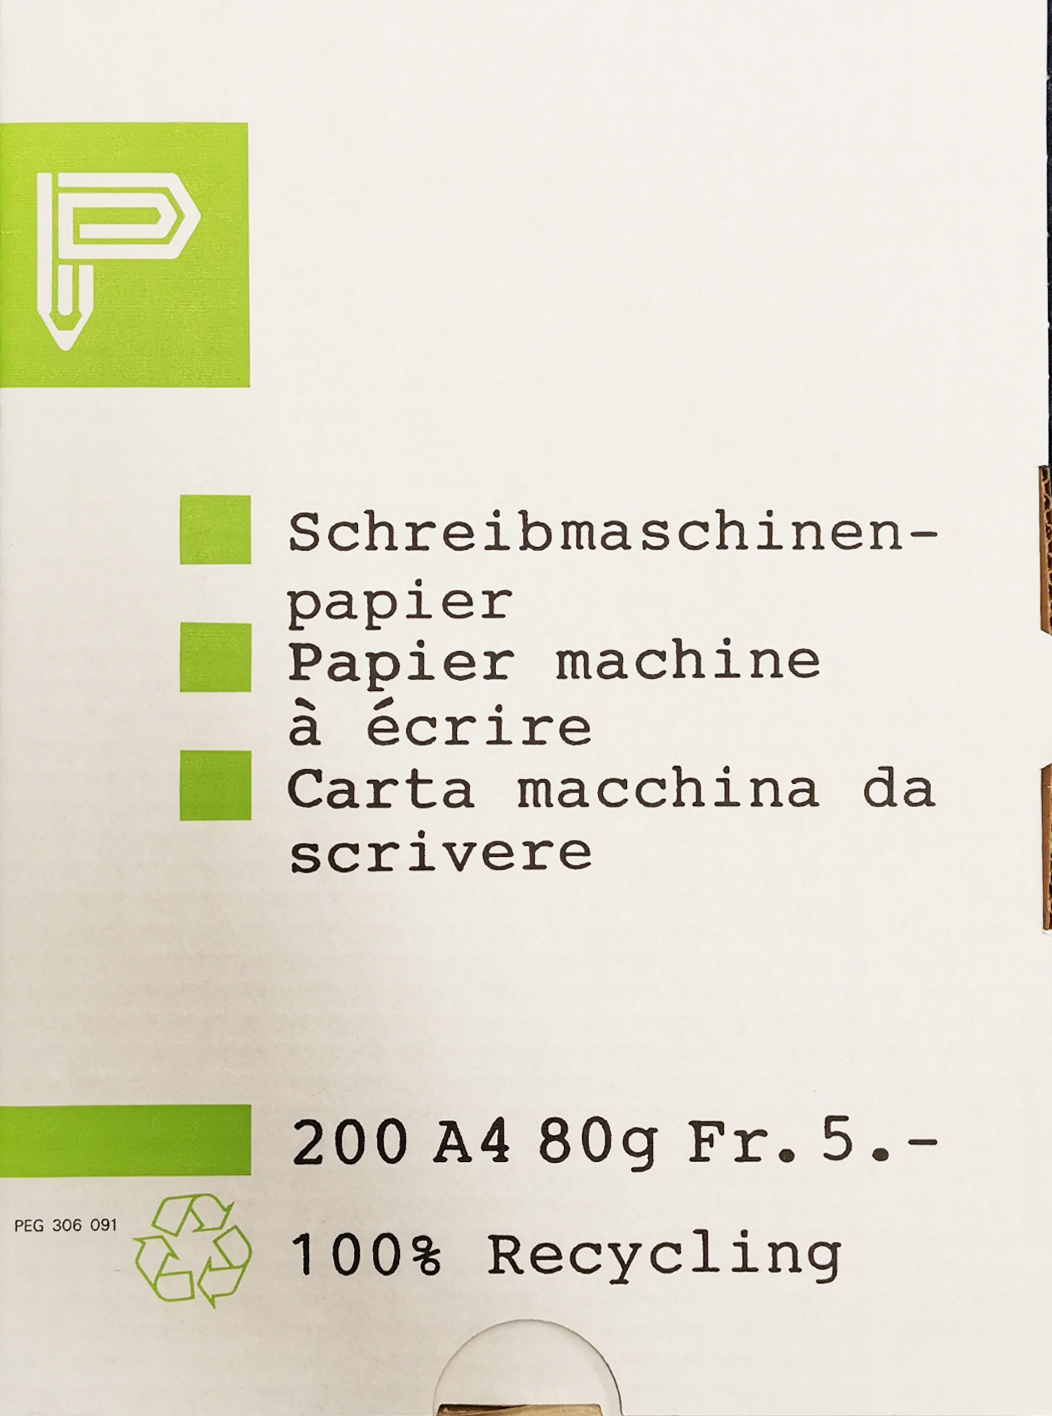 ELCO Papier machine à écrire A4 306091 Recycling 200 feuilles Recycling 200 feuilles